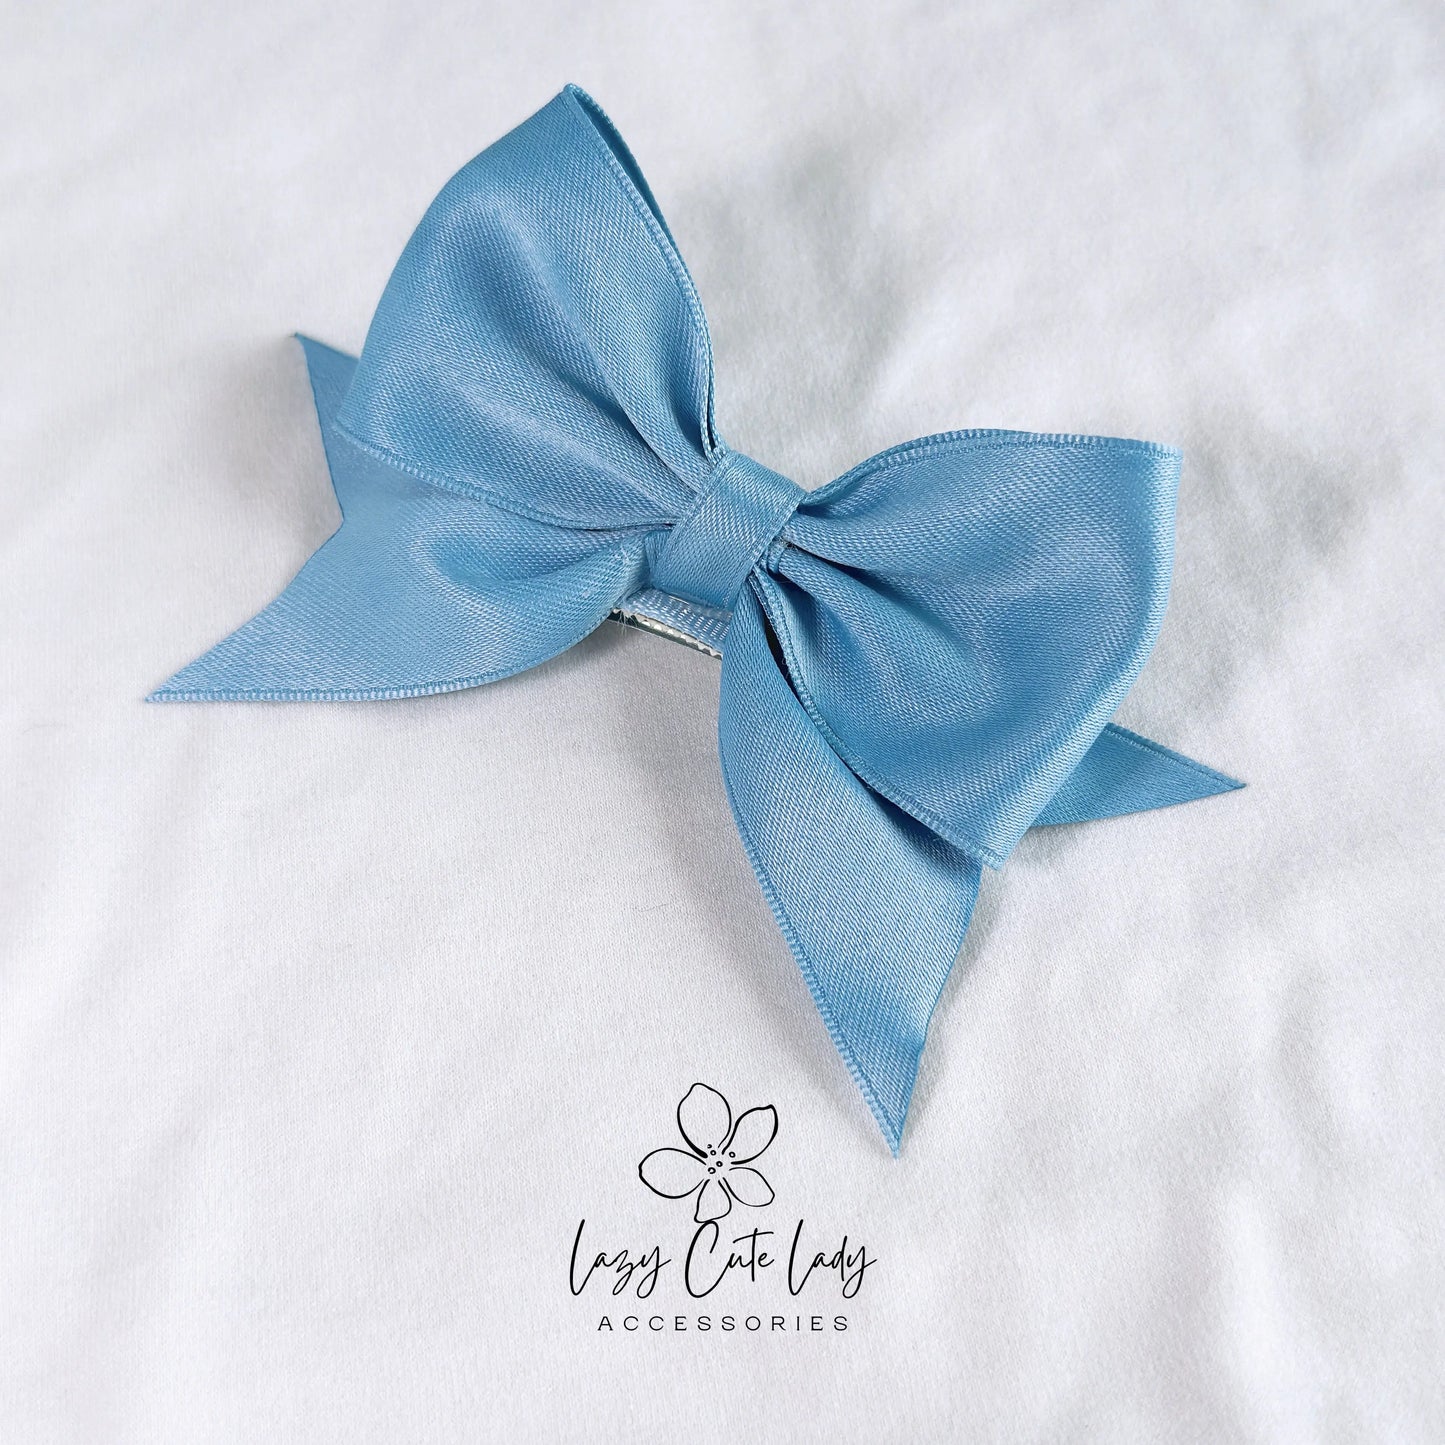 Cute Satin Hair Bow Clips - Hair accessory- Hair clips for girl - gift